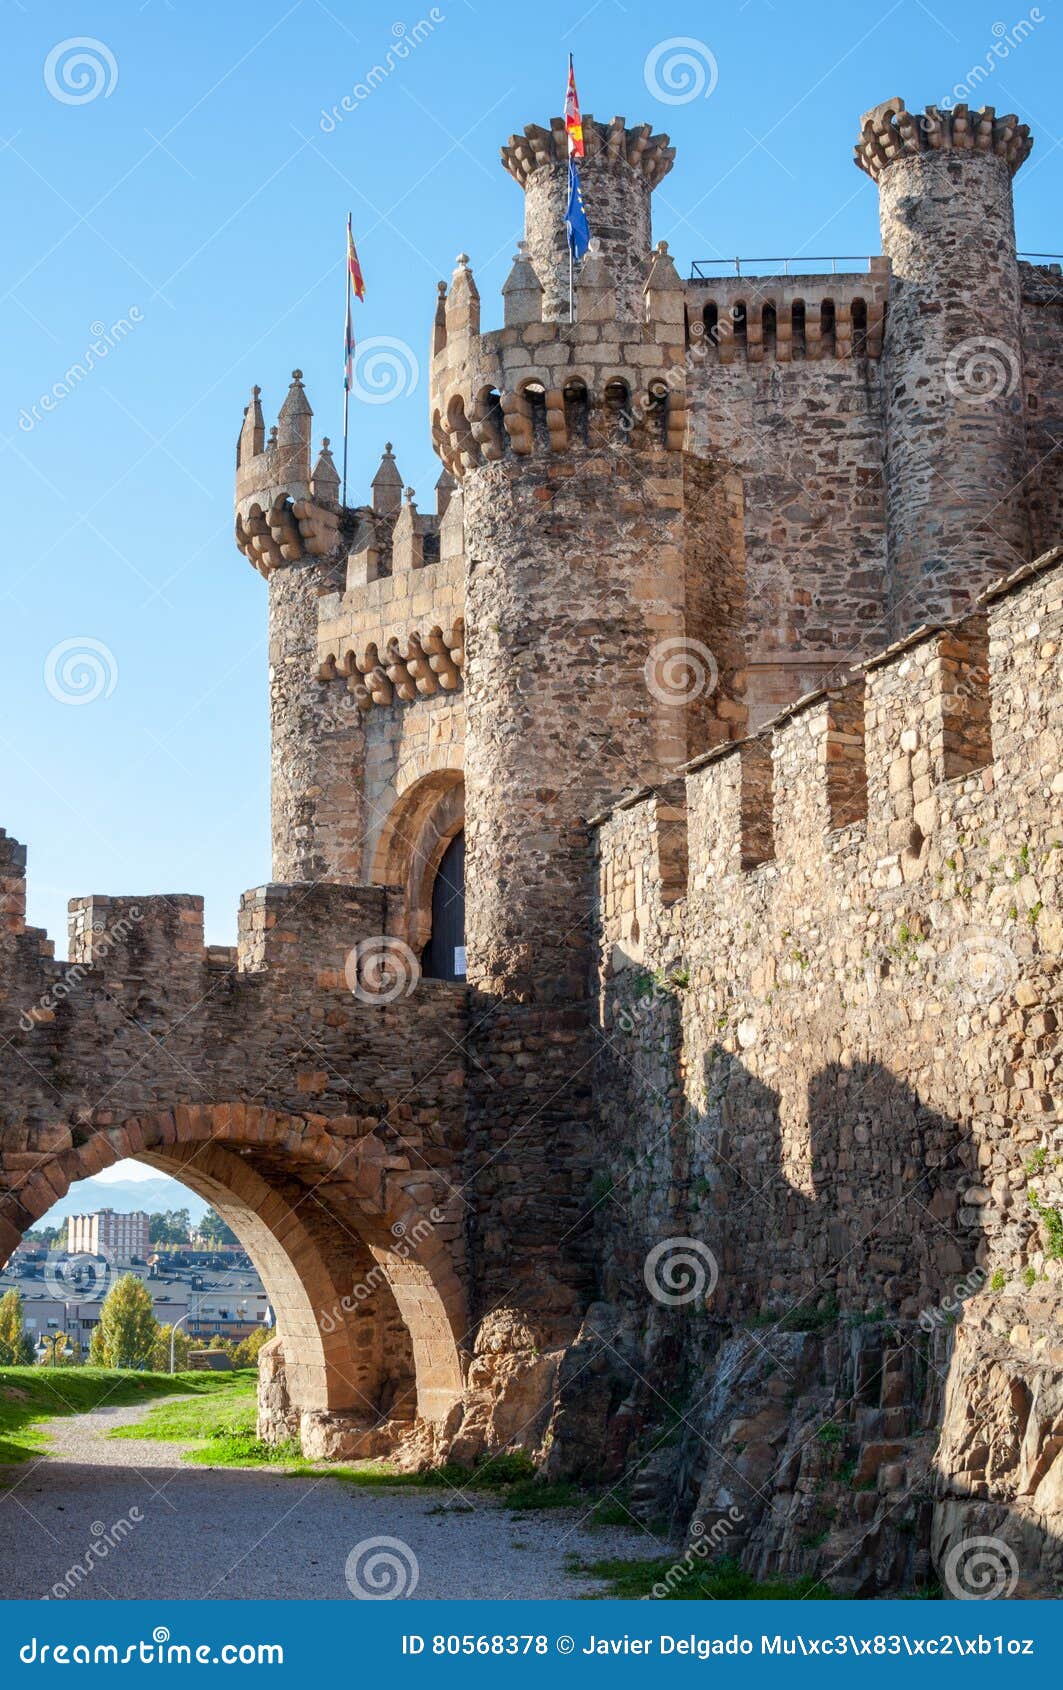 ponferrada castle entrance